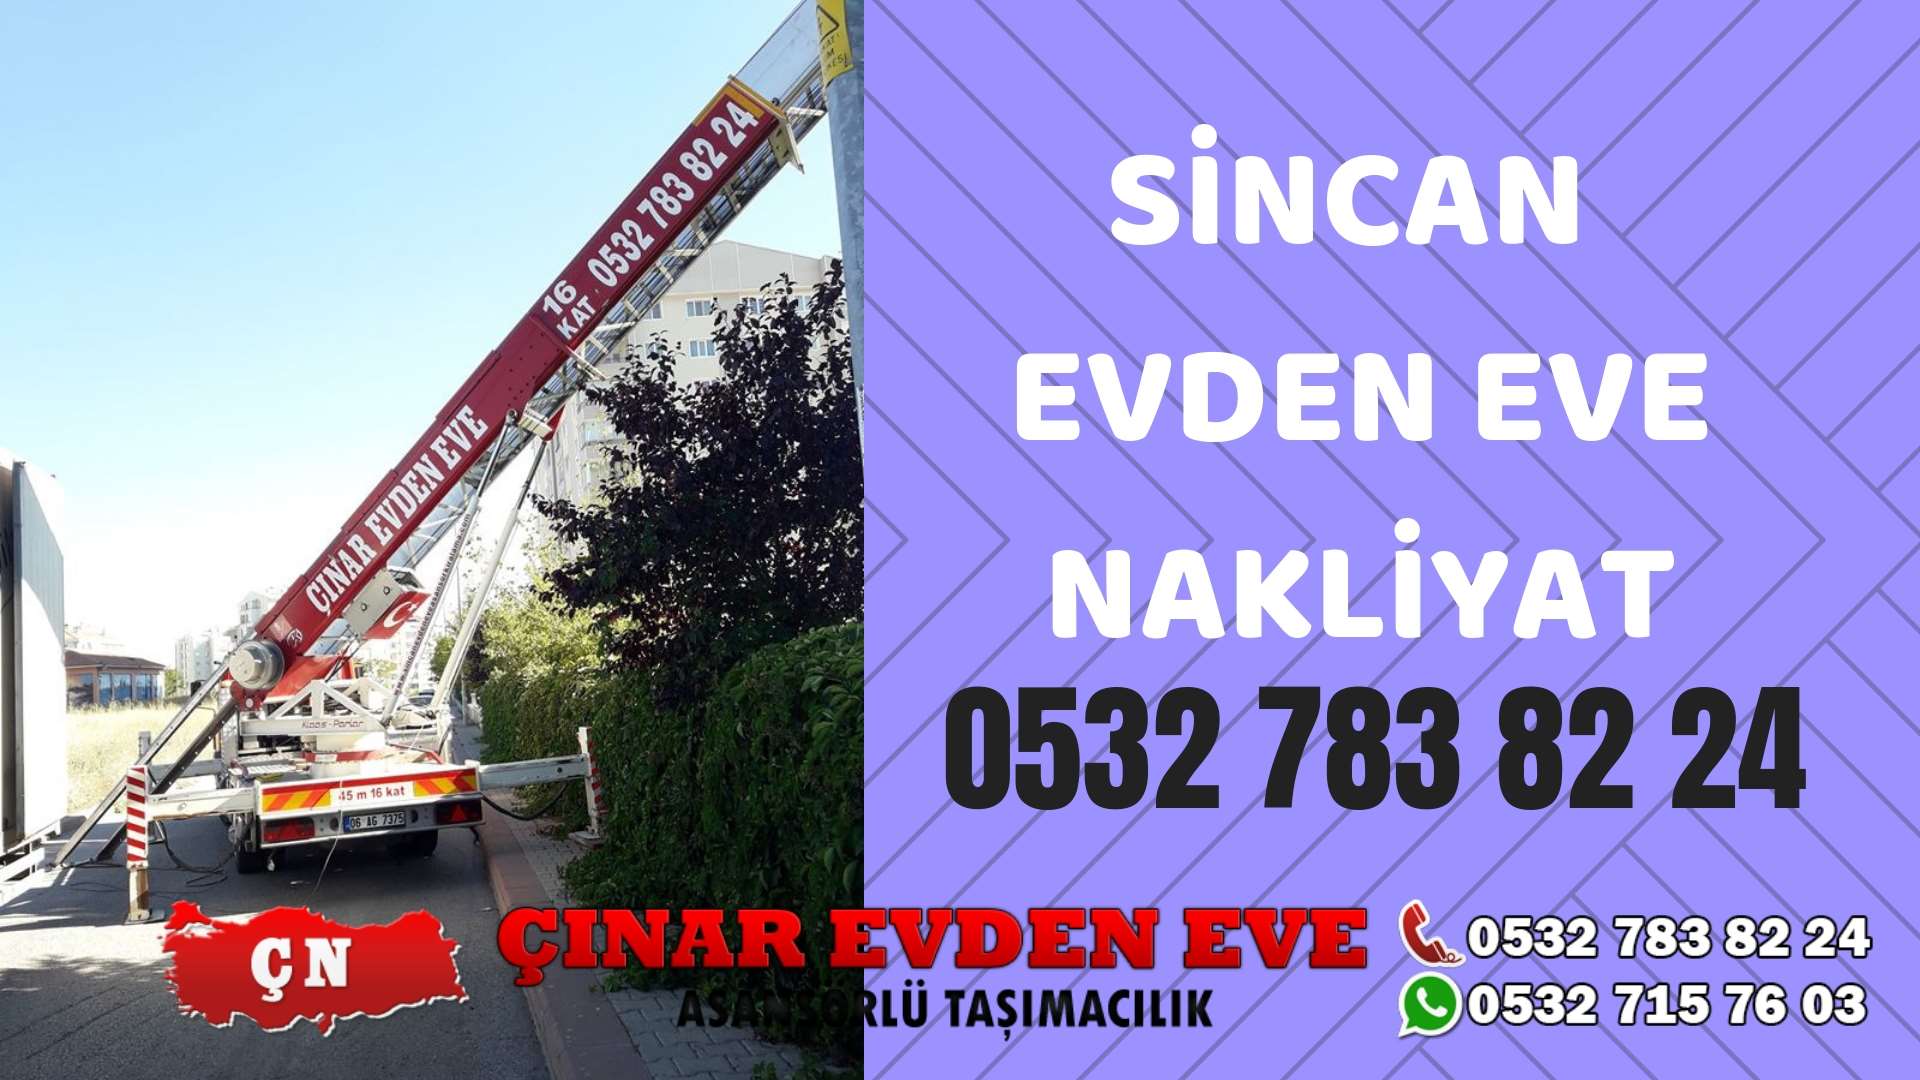 Ankara Sincan Evden eve ev taşıma sincan nakliye fiyatları 0532 715 76 03